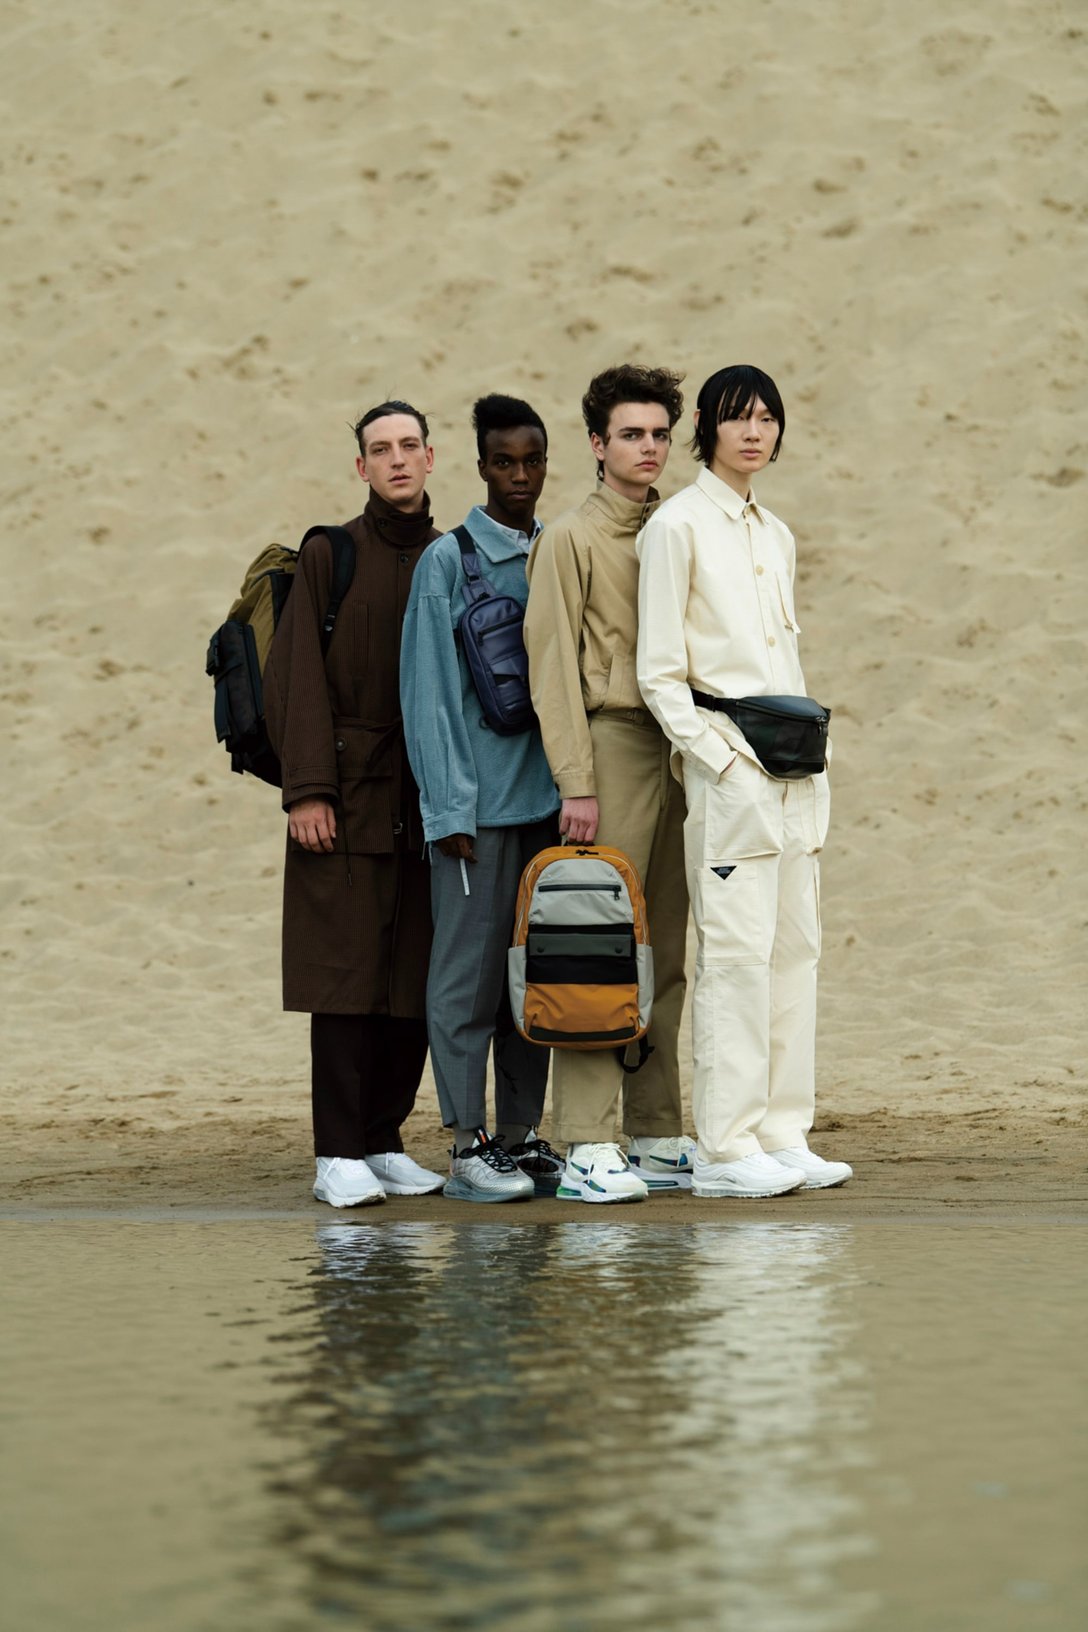 砂漠の水辺に佇む4人の男性モデル